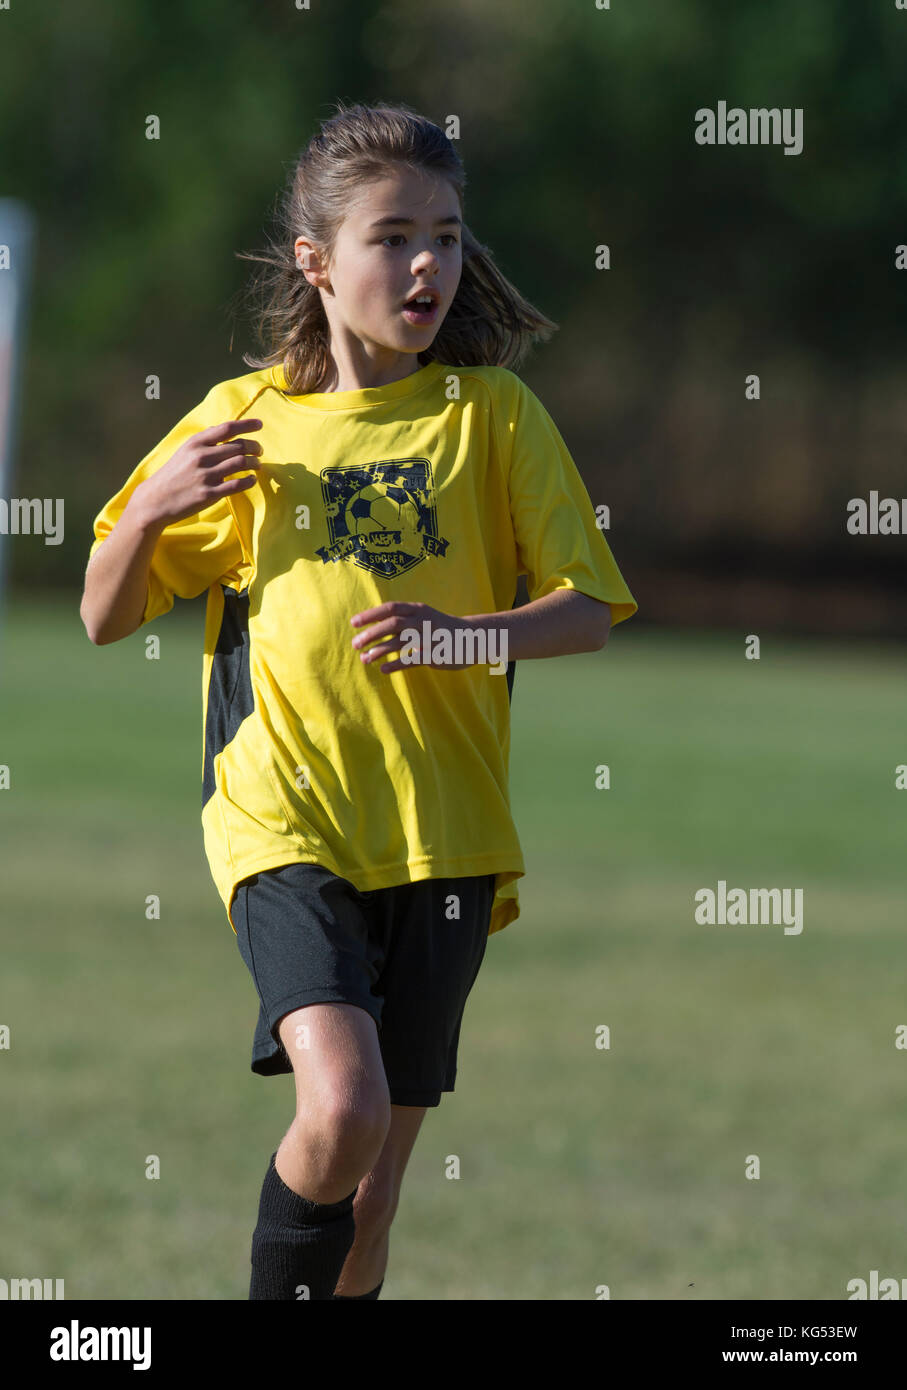 Una niña de 9 años jugando en un partido de fútbol. moretown, Vermont, EE.UU. Foto de stock